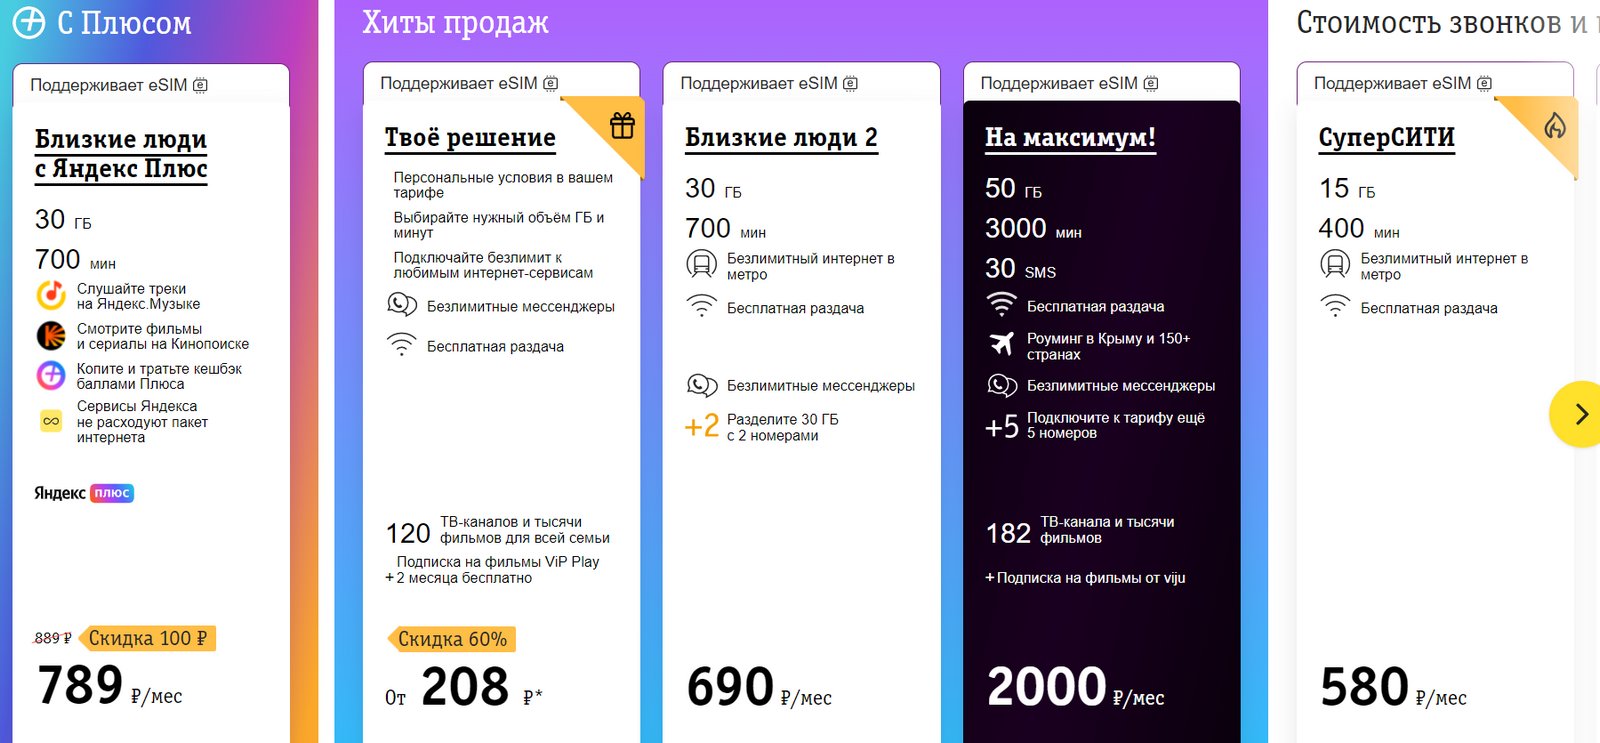 Noticias de operadores.  La nueva tarifa "Close people with Yandex Plus", análisis de los pros y los contras.